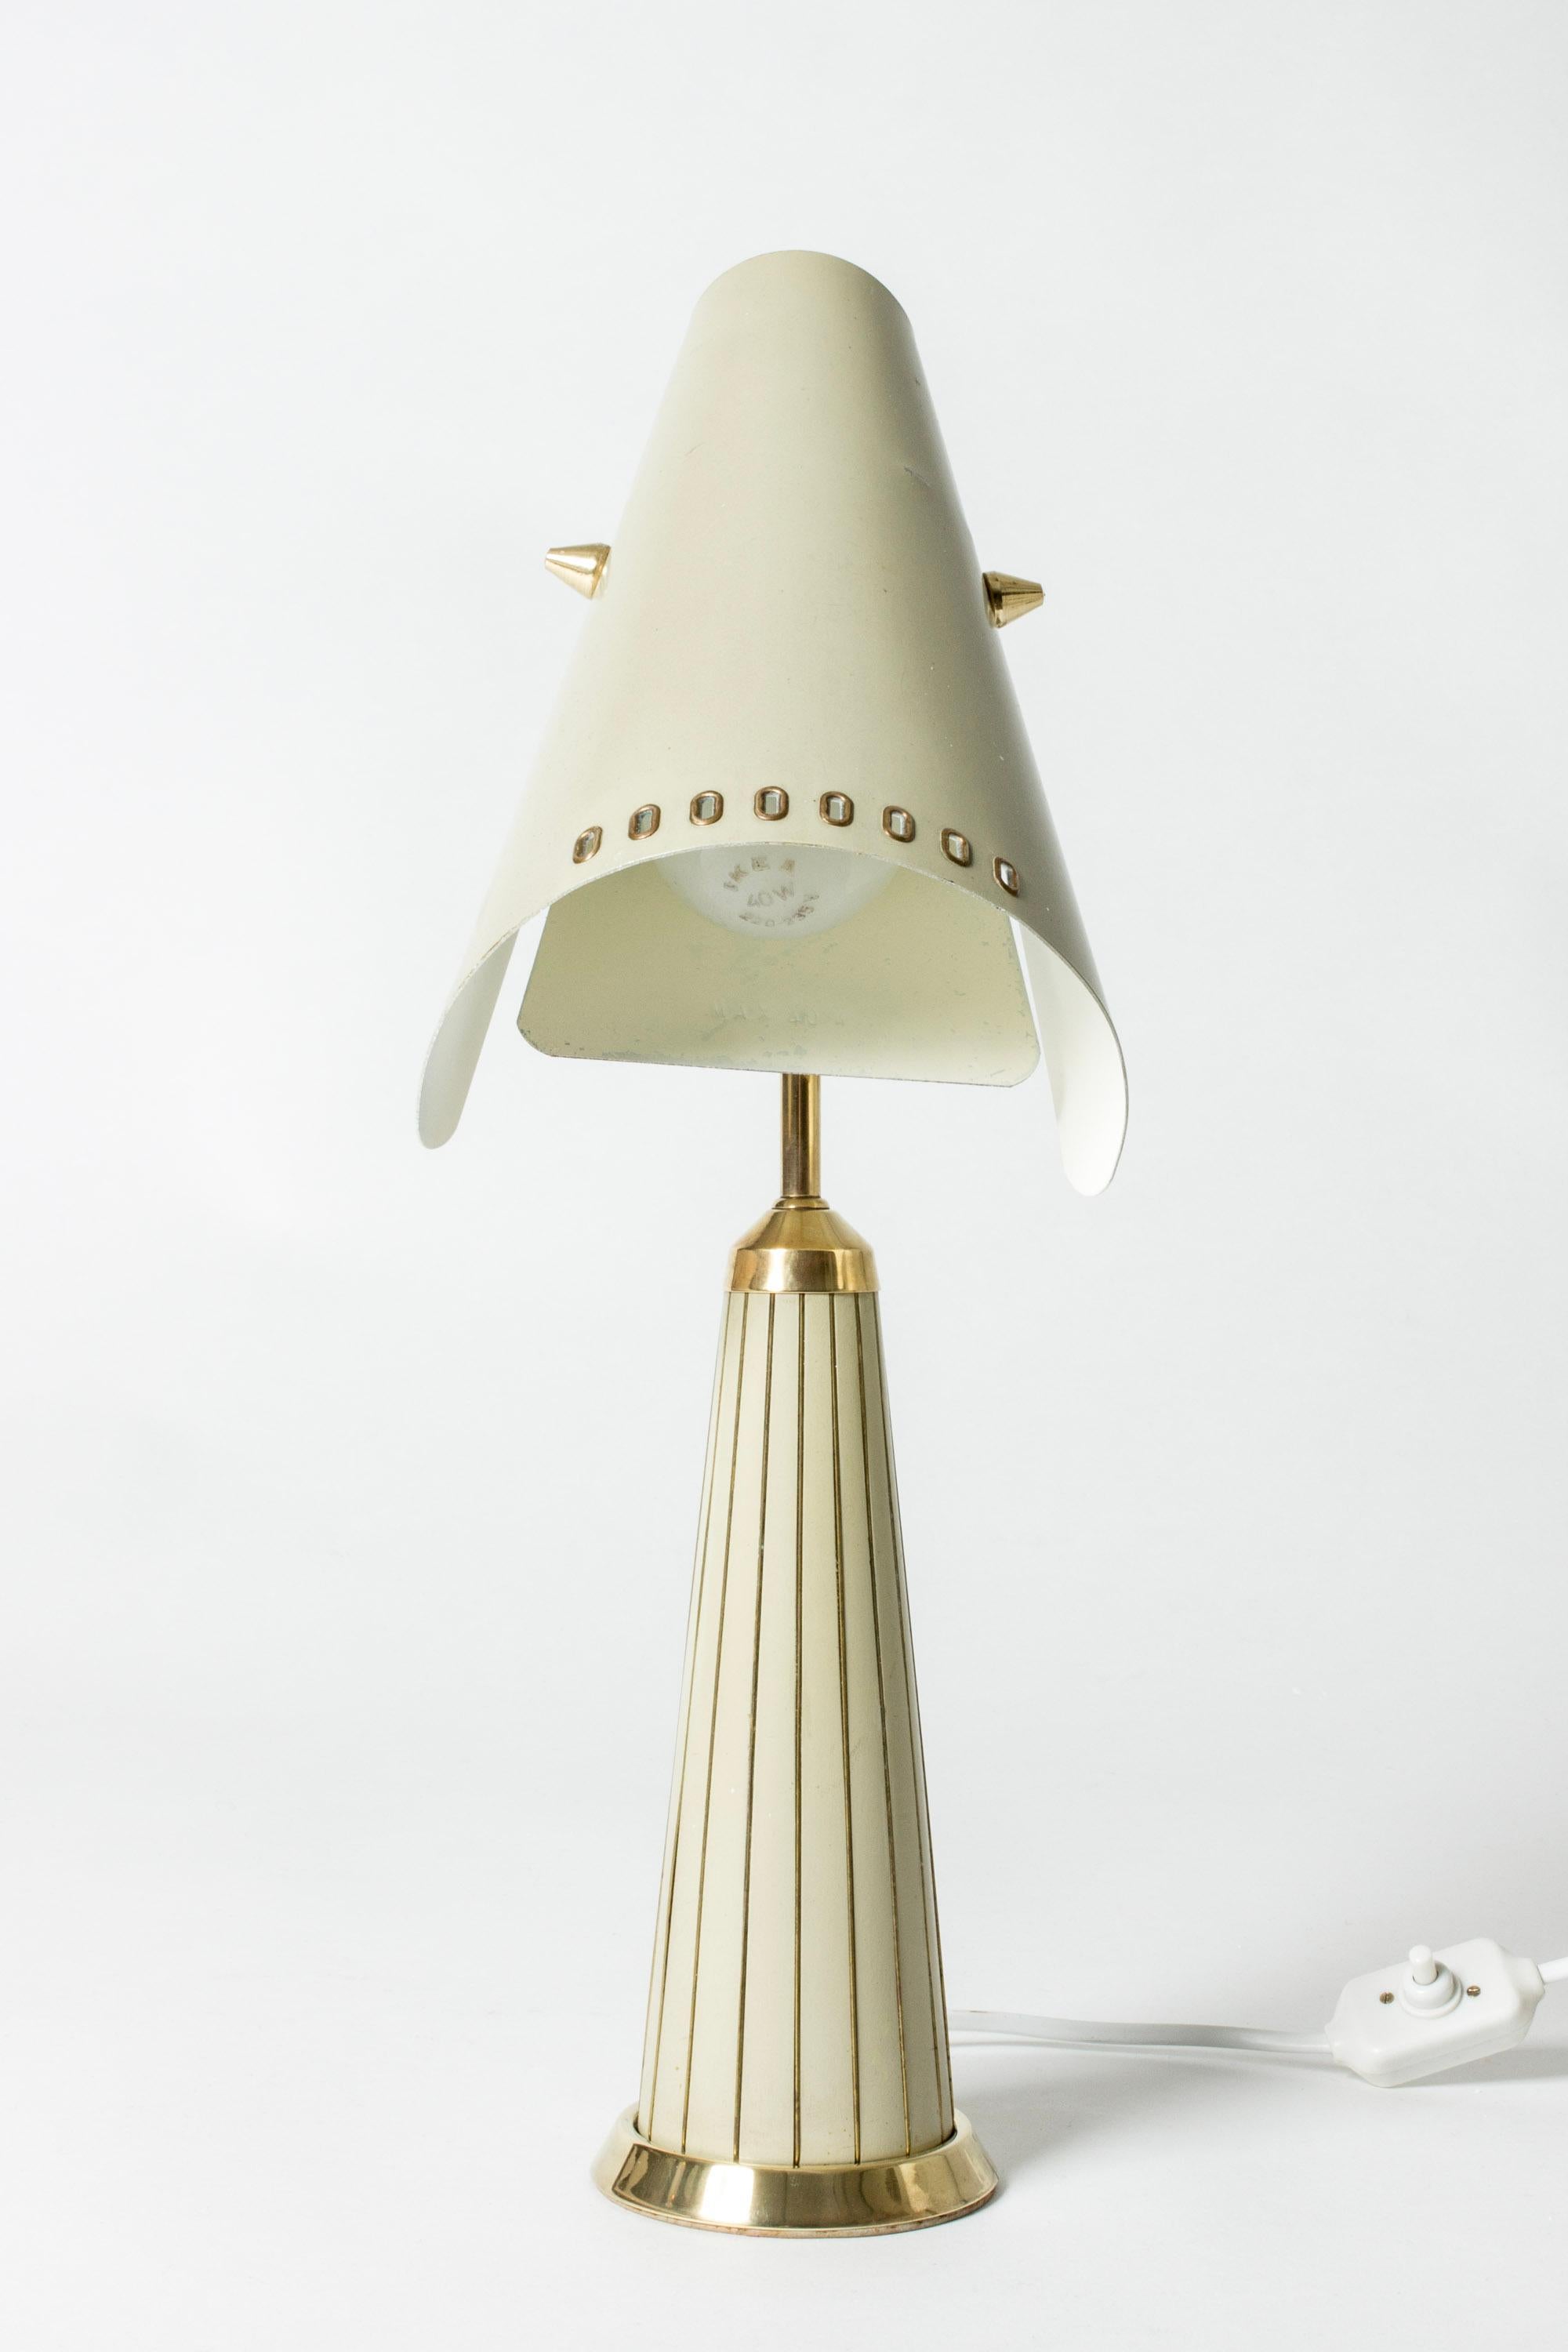 Sehr coole schwedische Tischlampe aus den 1950er Jahren von Fåglavik, einer kleinen Leuchtenfirma in Südschweden. Fåglavik hat kleine Beleuchtungsserien mit ausgeprägter künstlerischer Ausdruckskraft hergestellt. Hergestellt aus cremefarben